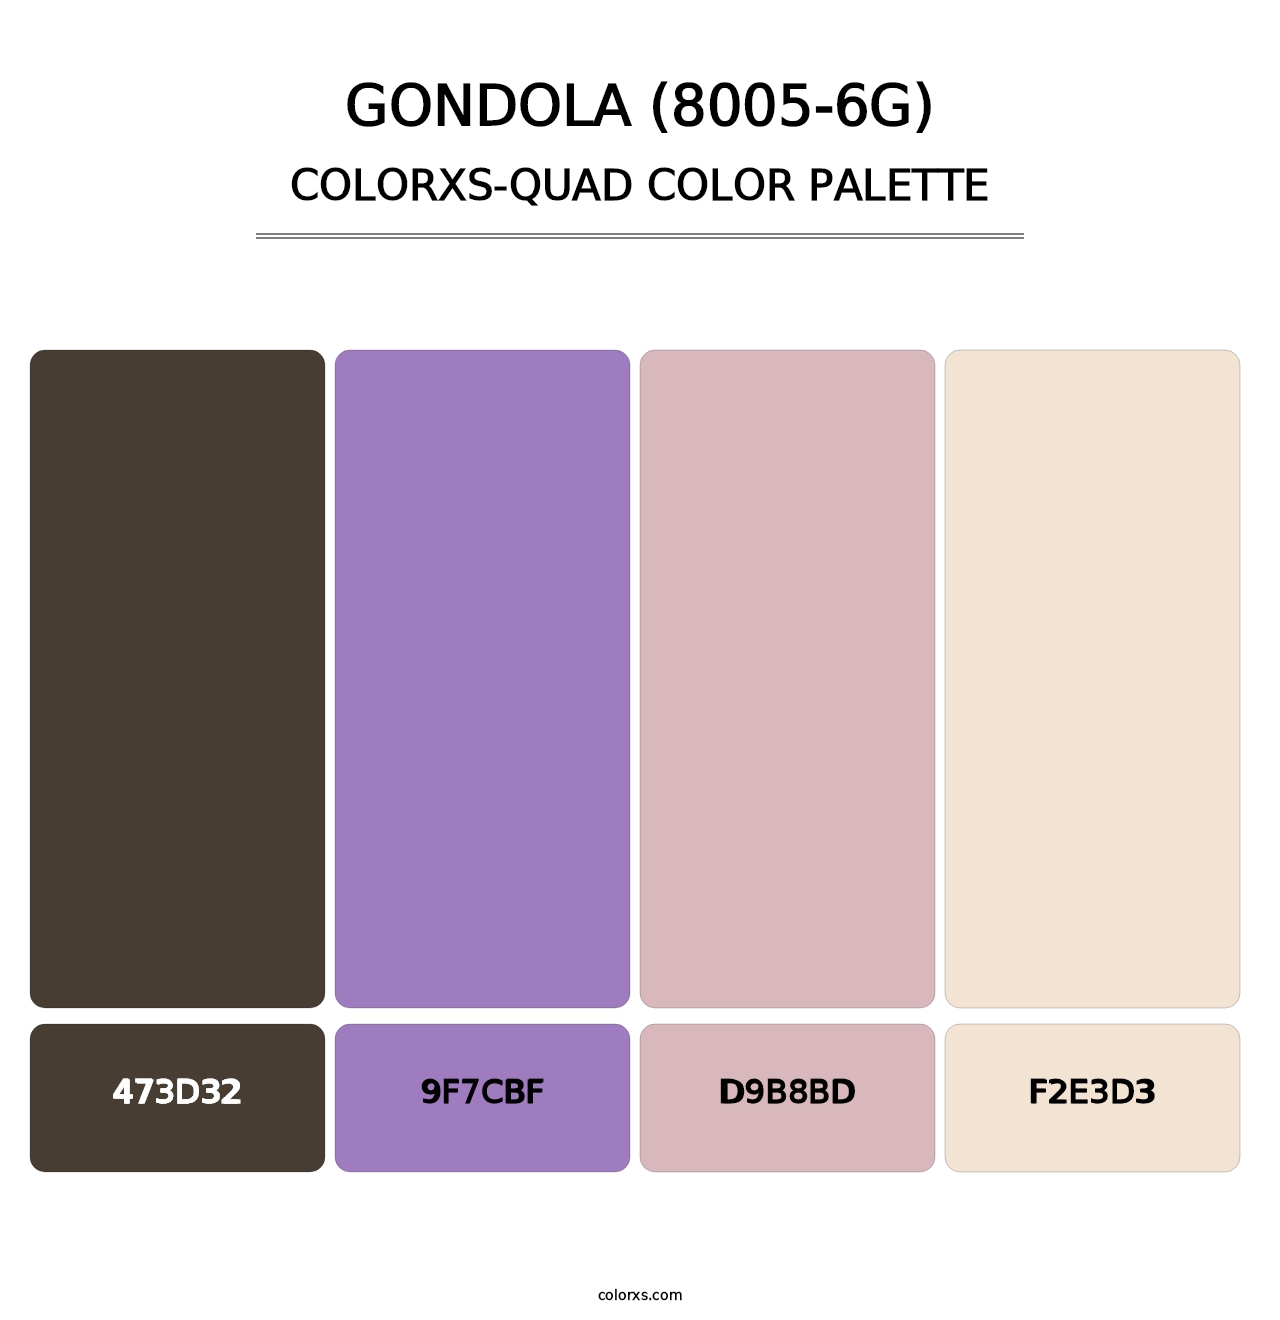 Gondola (8005-6G) - Colorxs Quad Palette